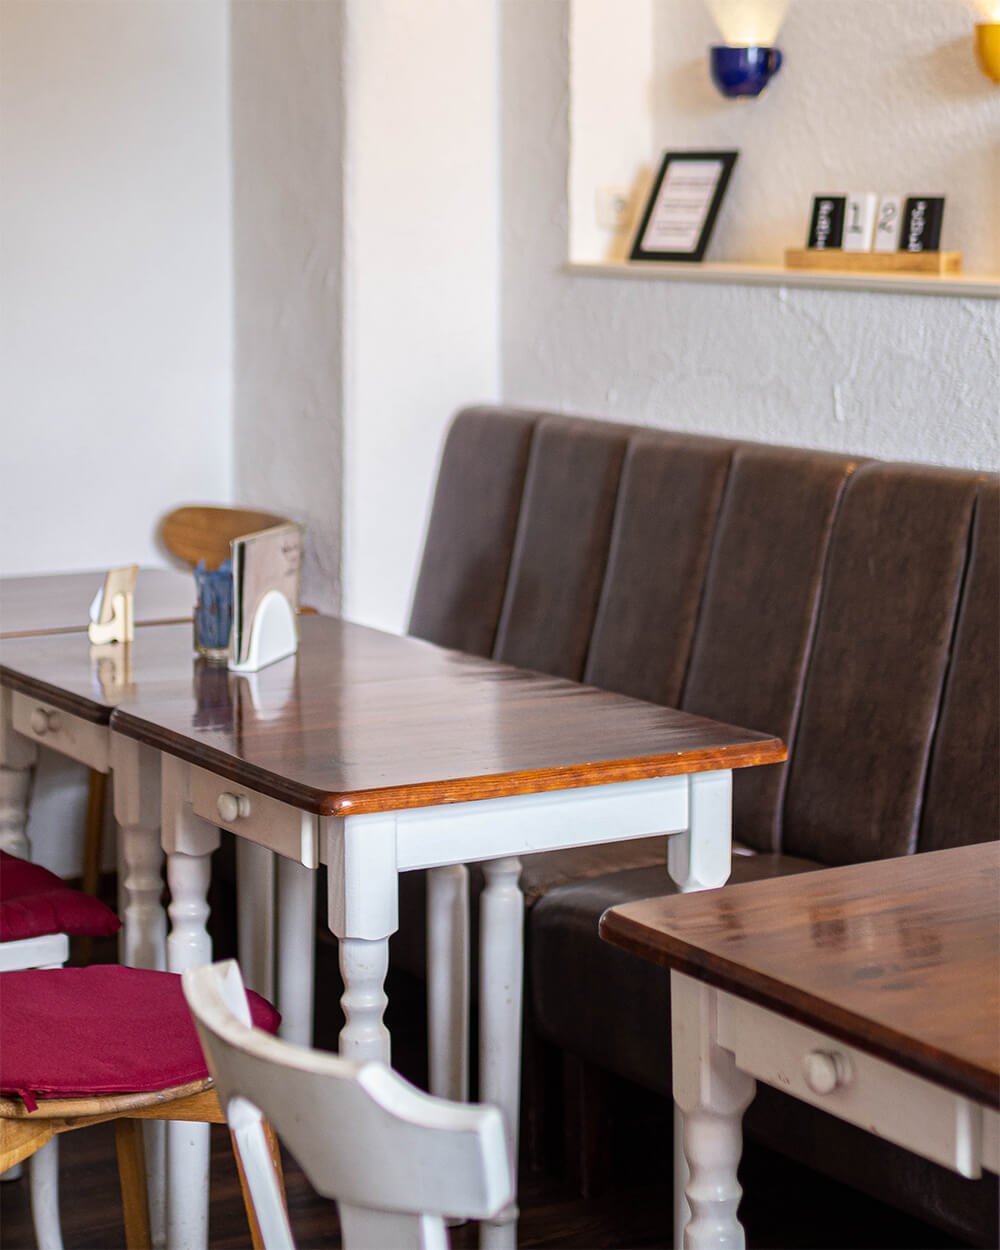 Das GlücksCafé Auerbach ein Ort zum Wohlfühlen mit einer wunderschönen Einrichtung im Vintage Stil.